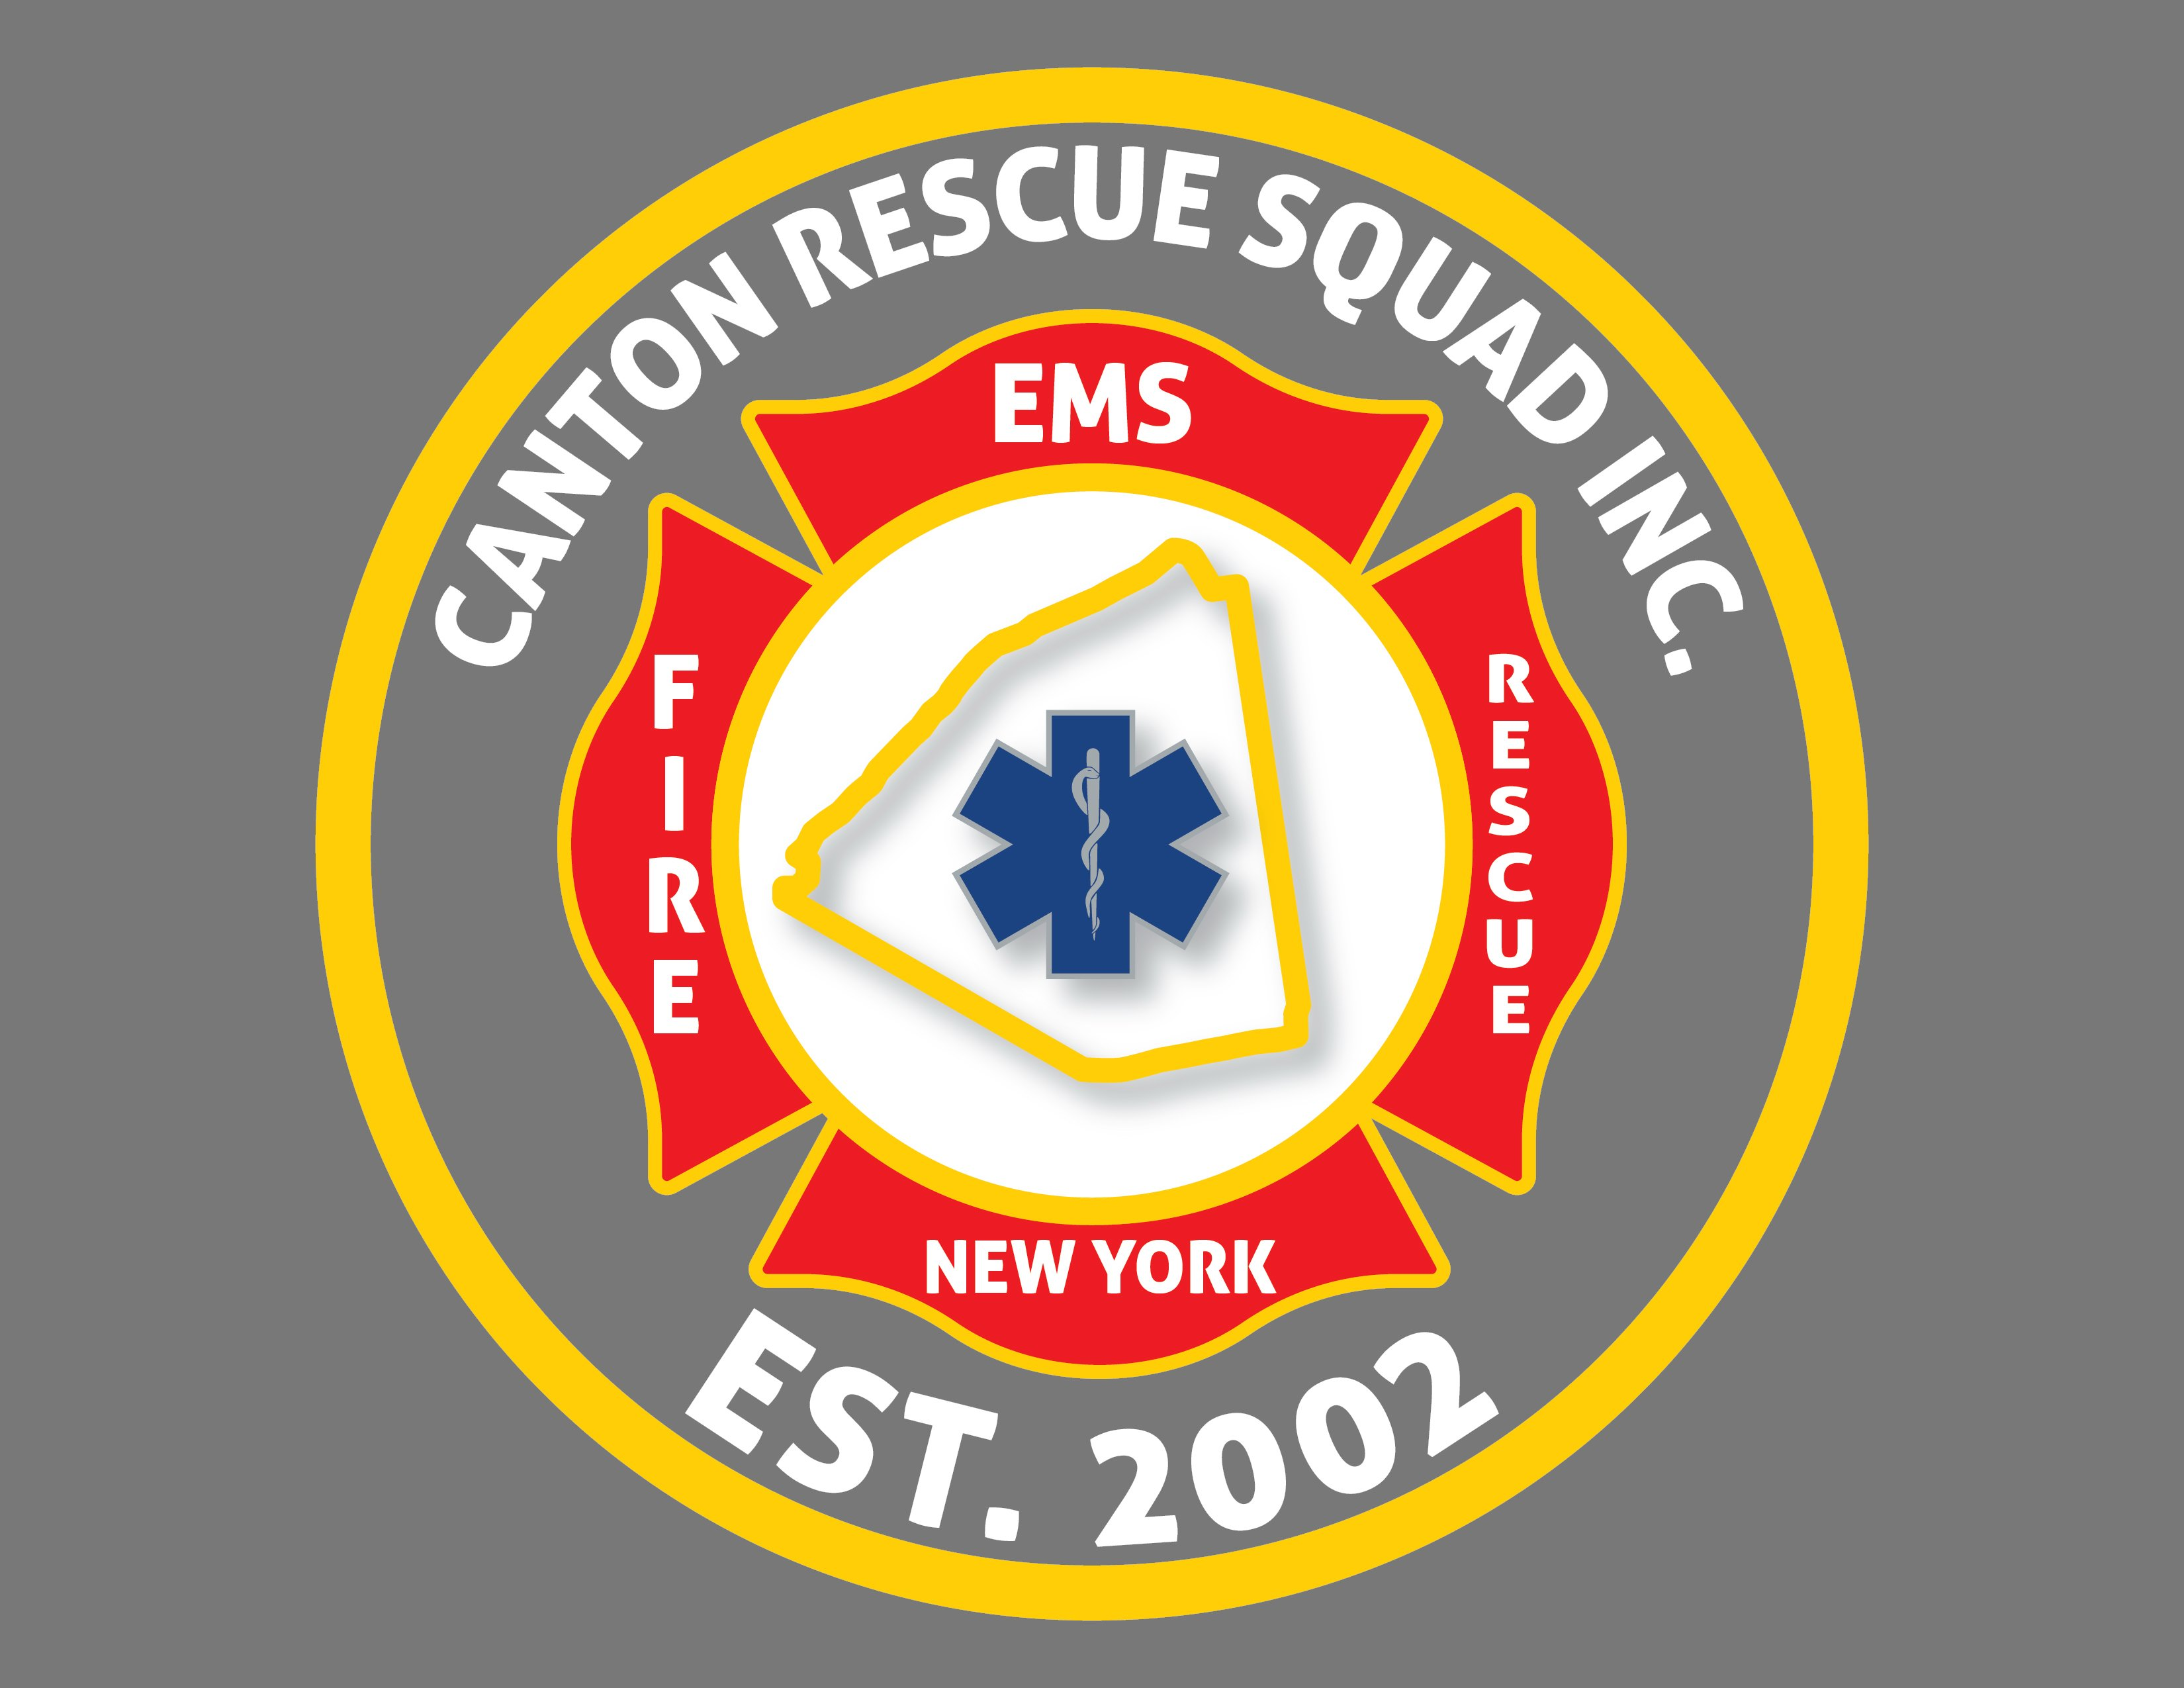 Trademark Logo CANTON RESCUE SQUAD INC., EST. 2002, NEW YORK, FIRE, EMS, RESCUE